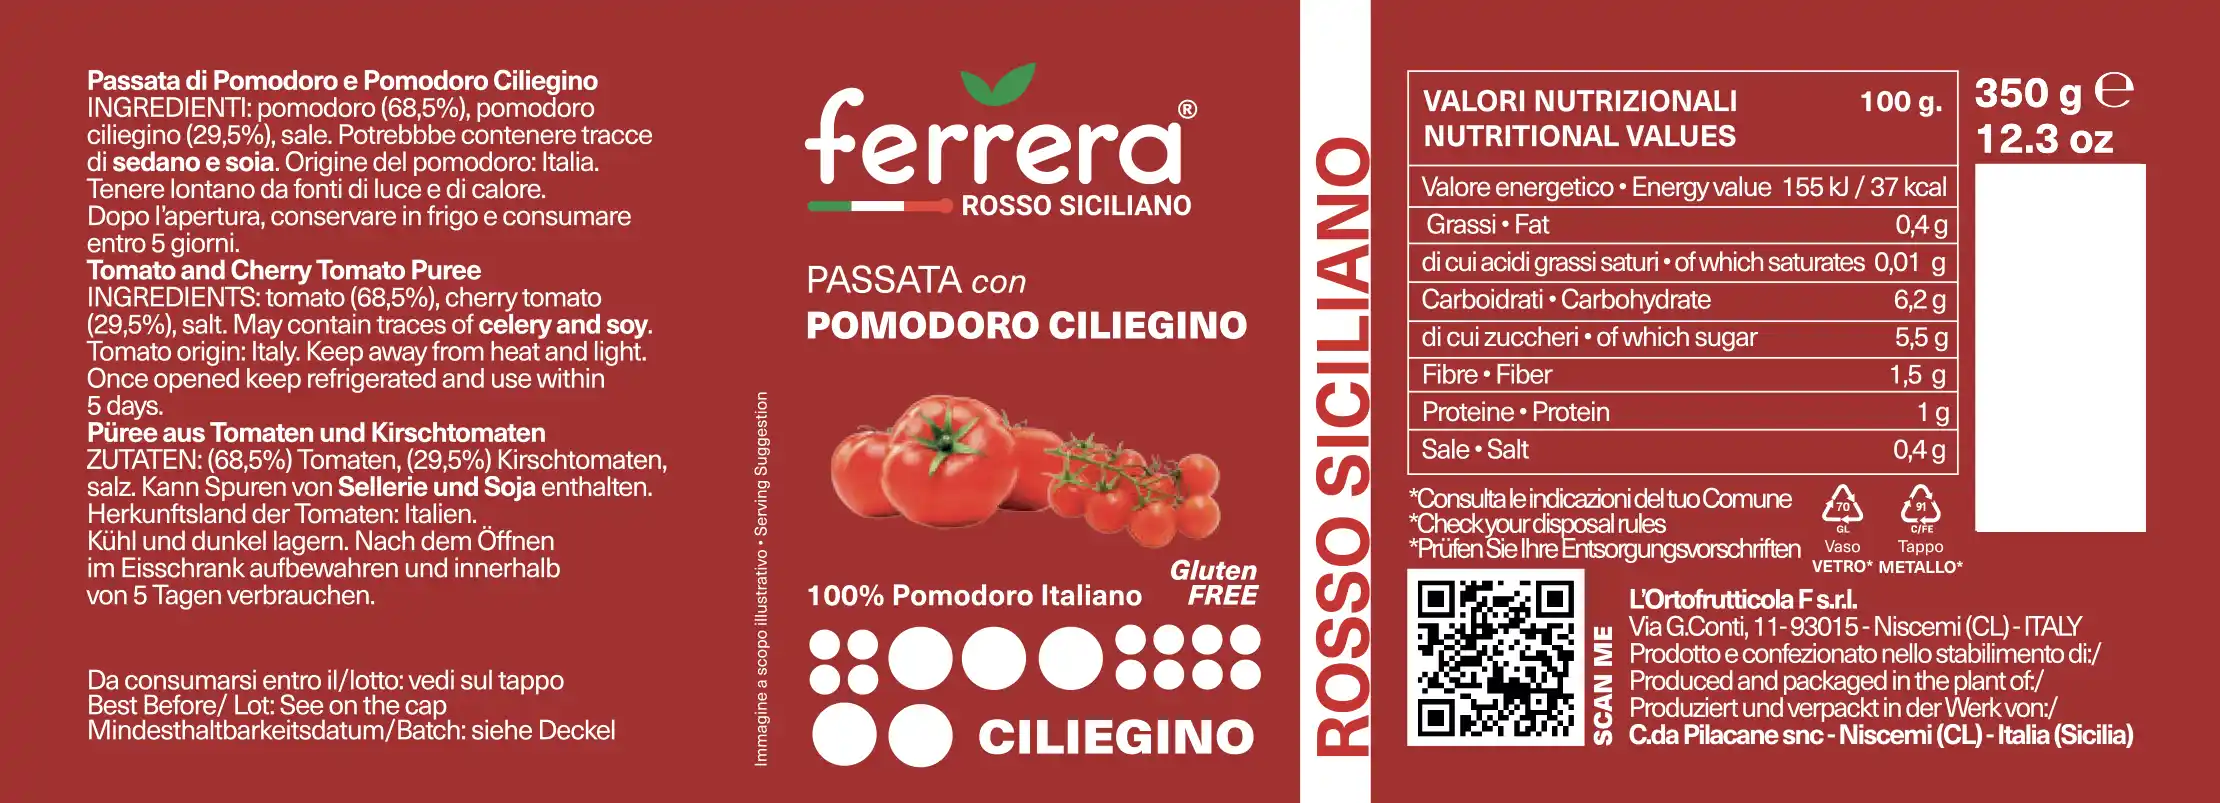 Passata Di Pomodoro Ciliegino Ferrera Agrisicilia